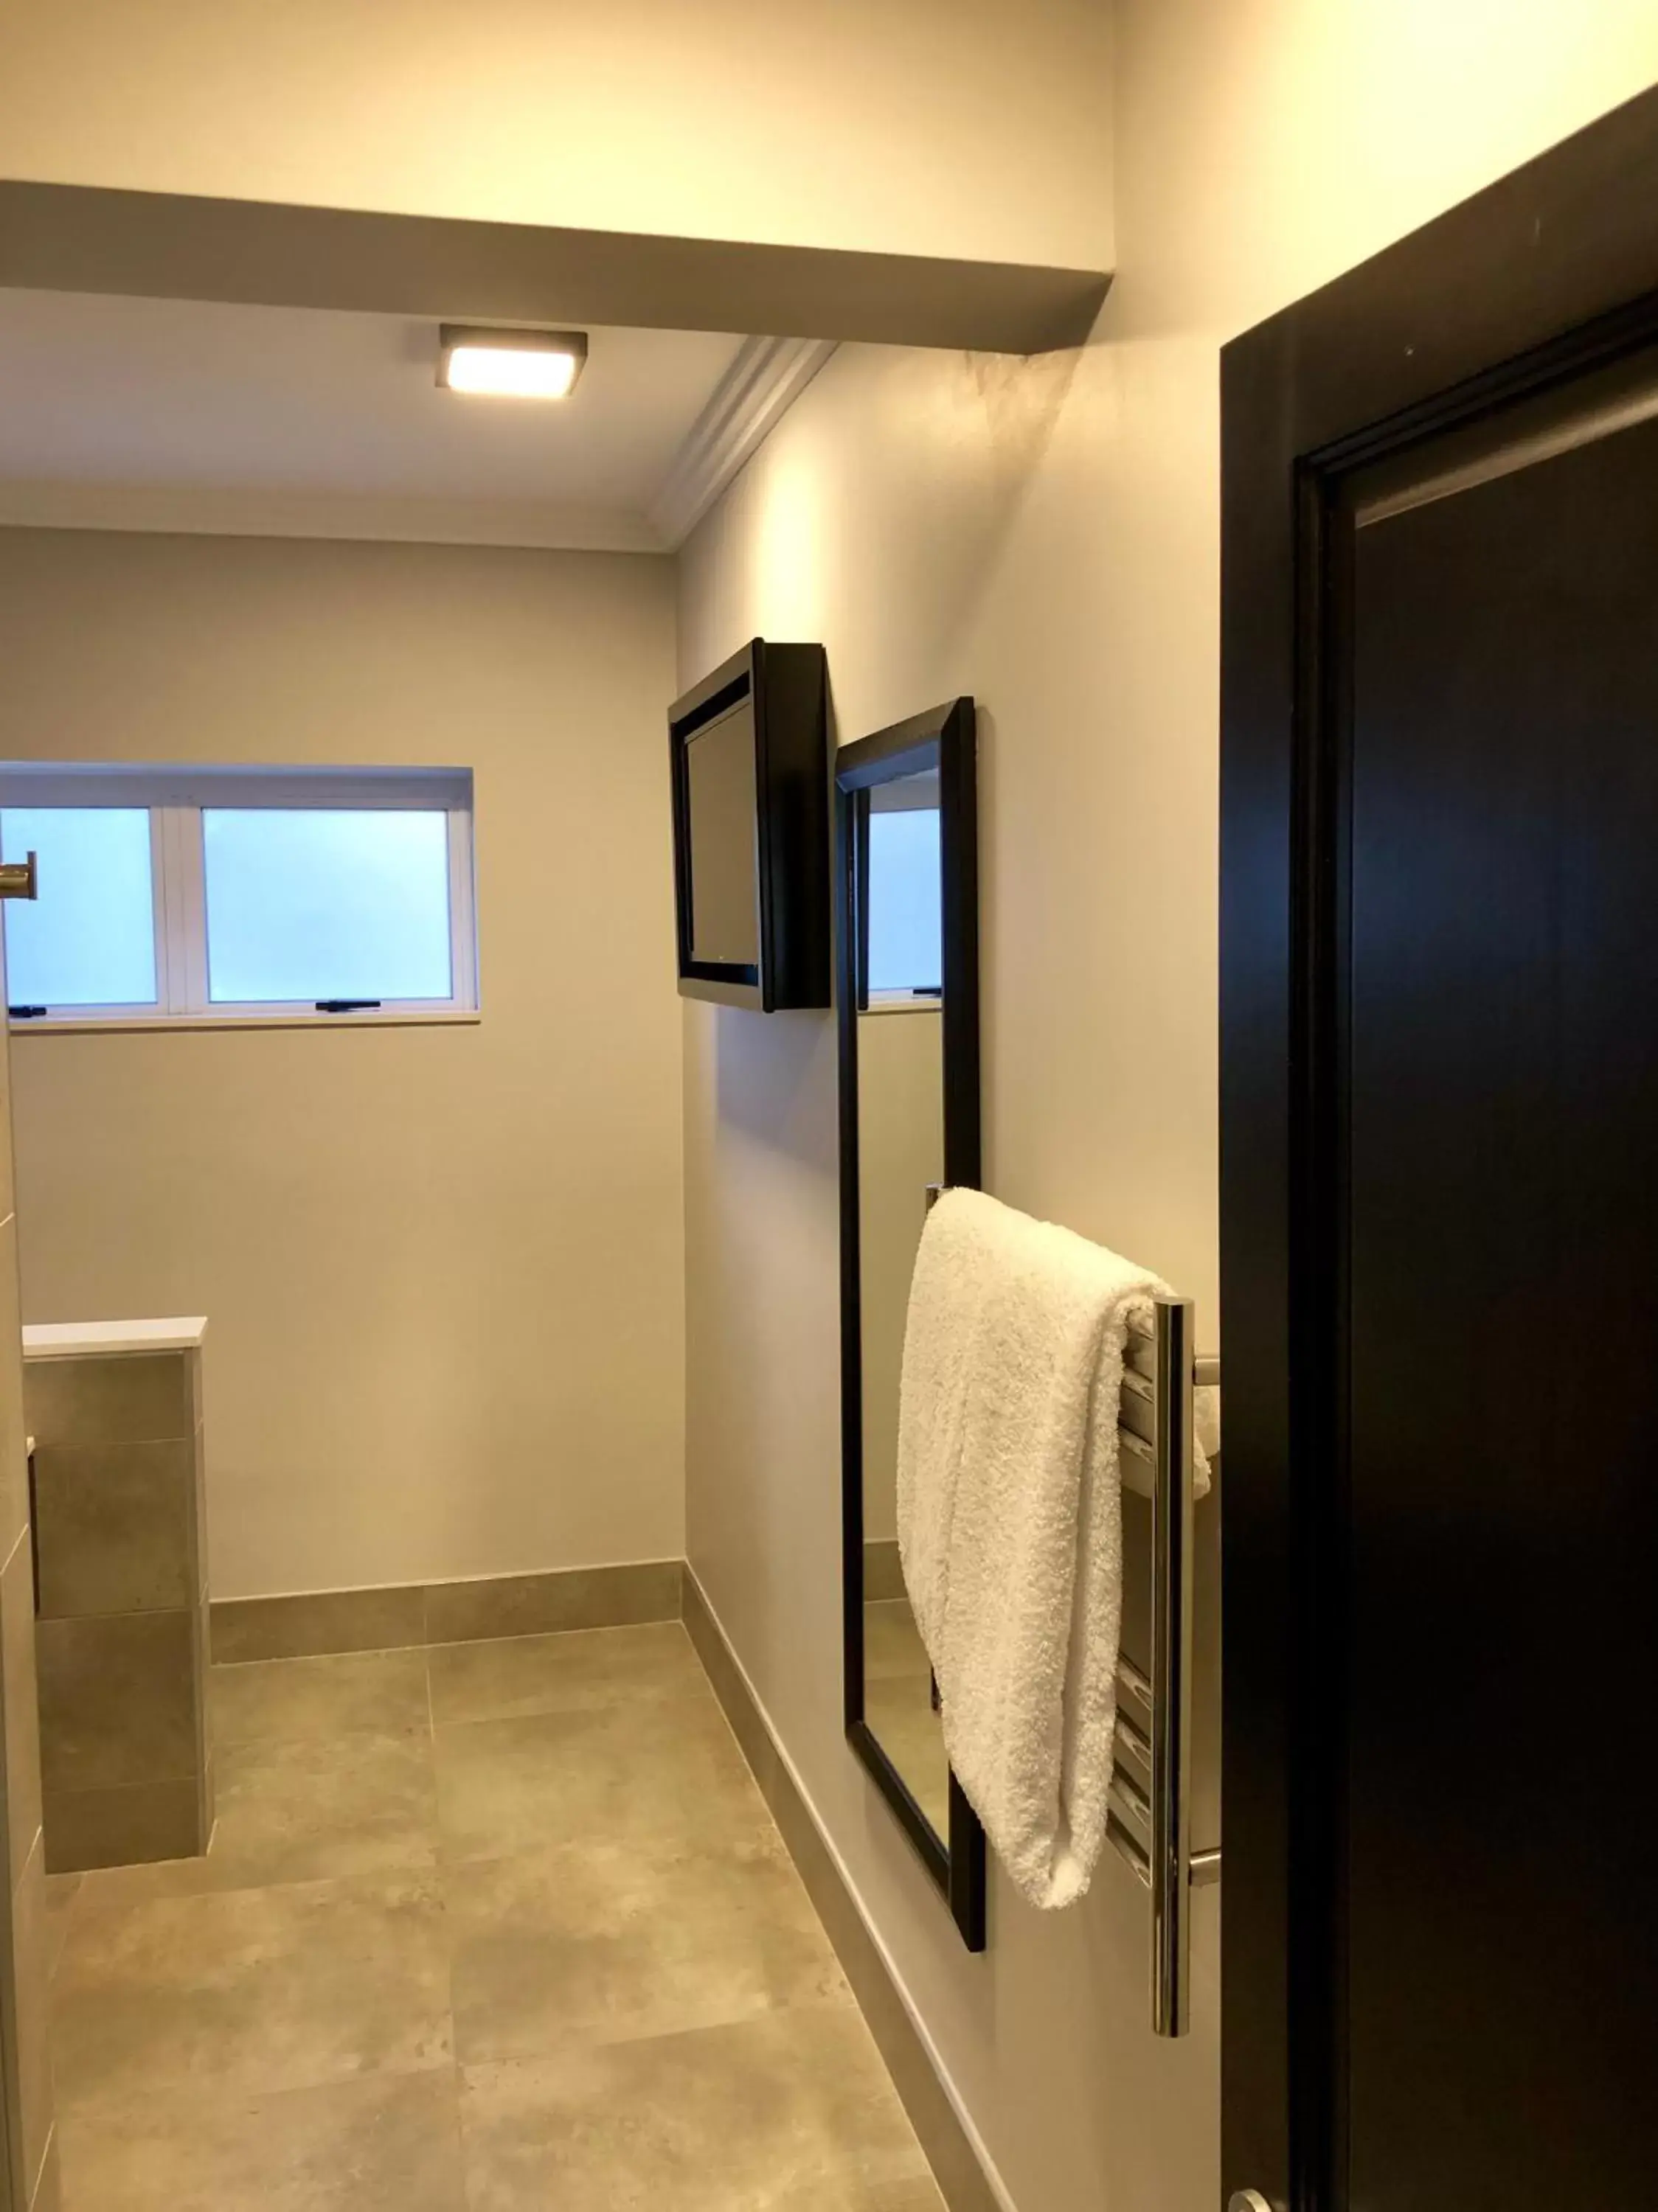 Bathroom in Belaire Suites Hotel